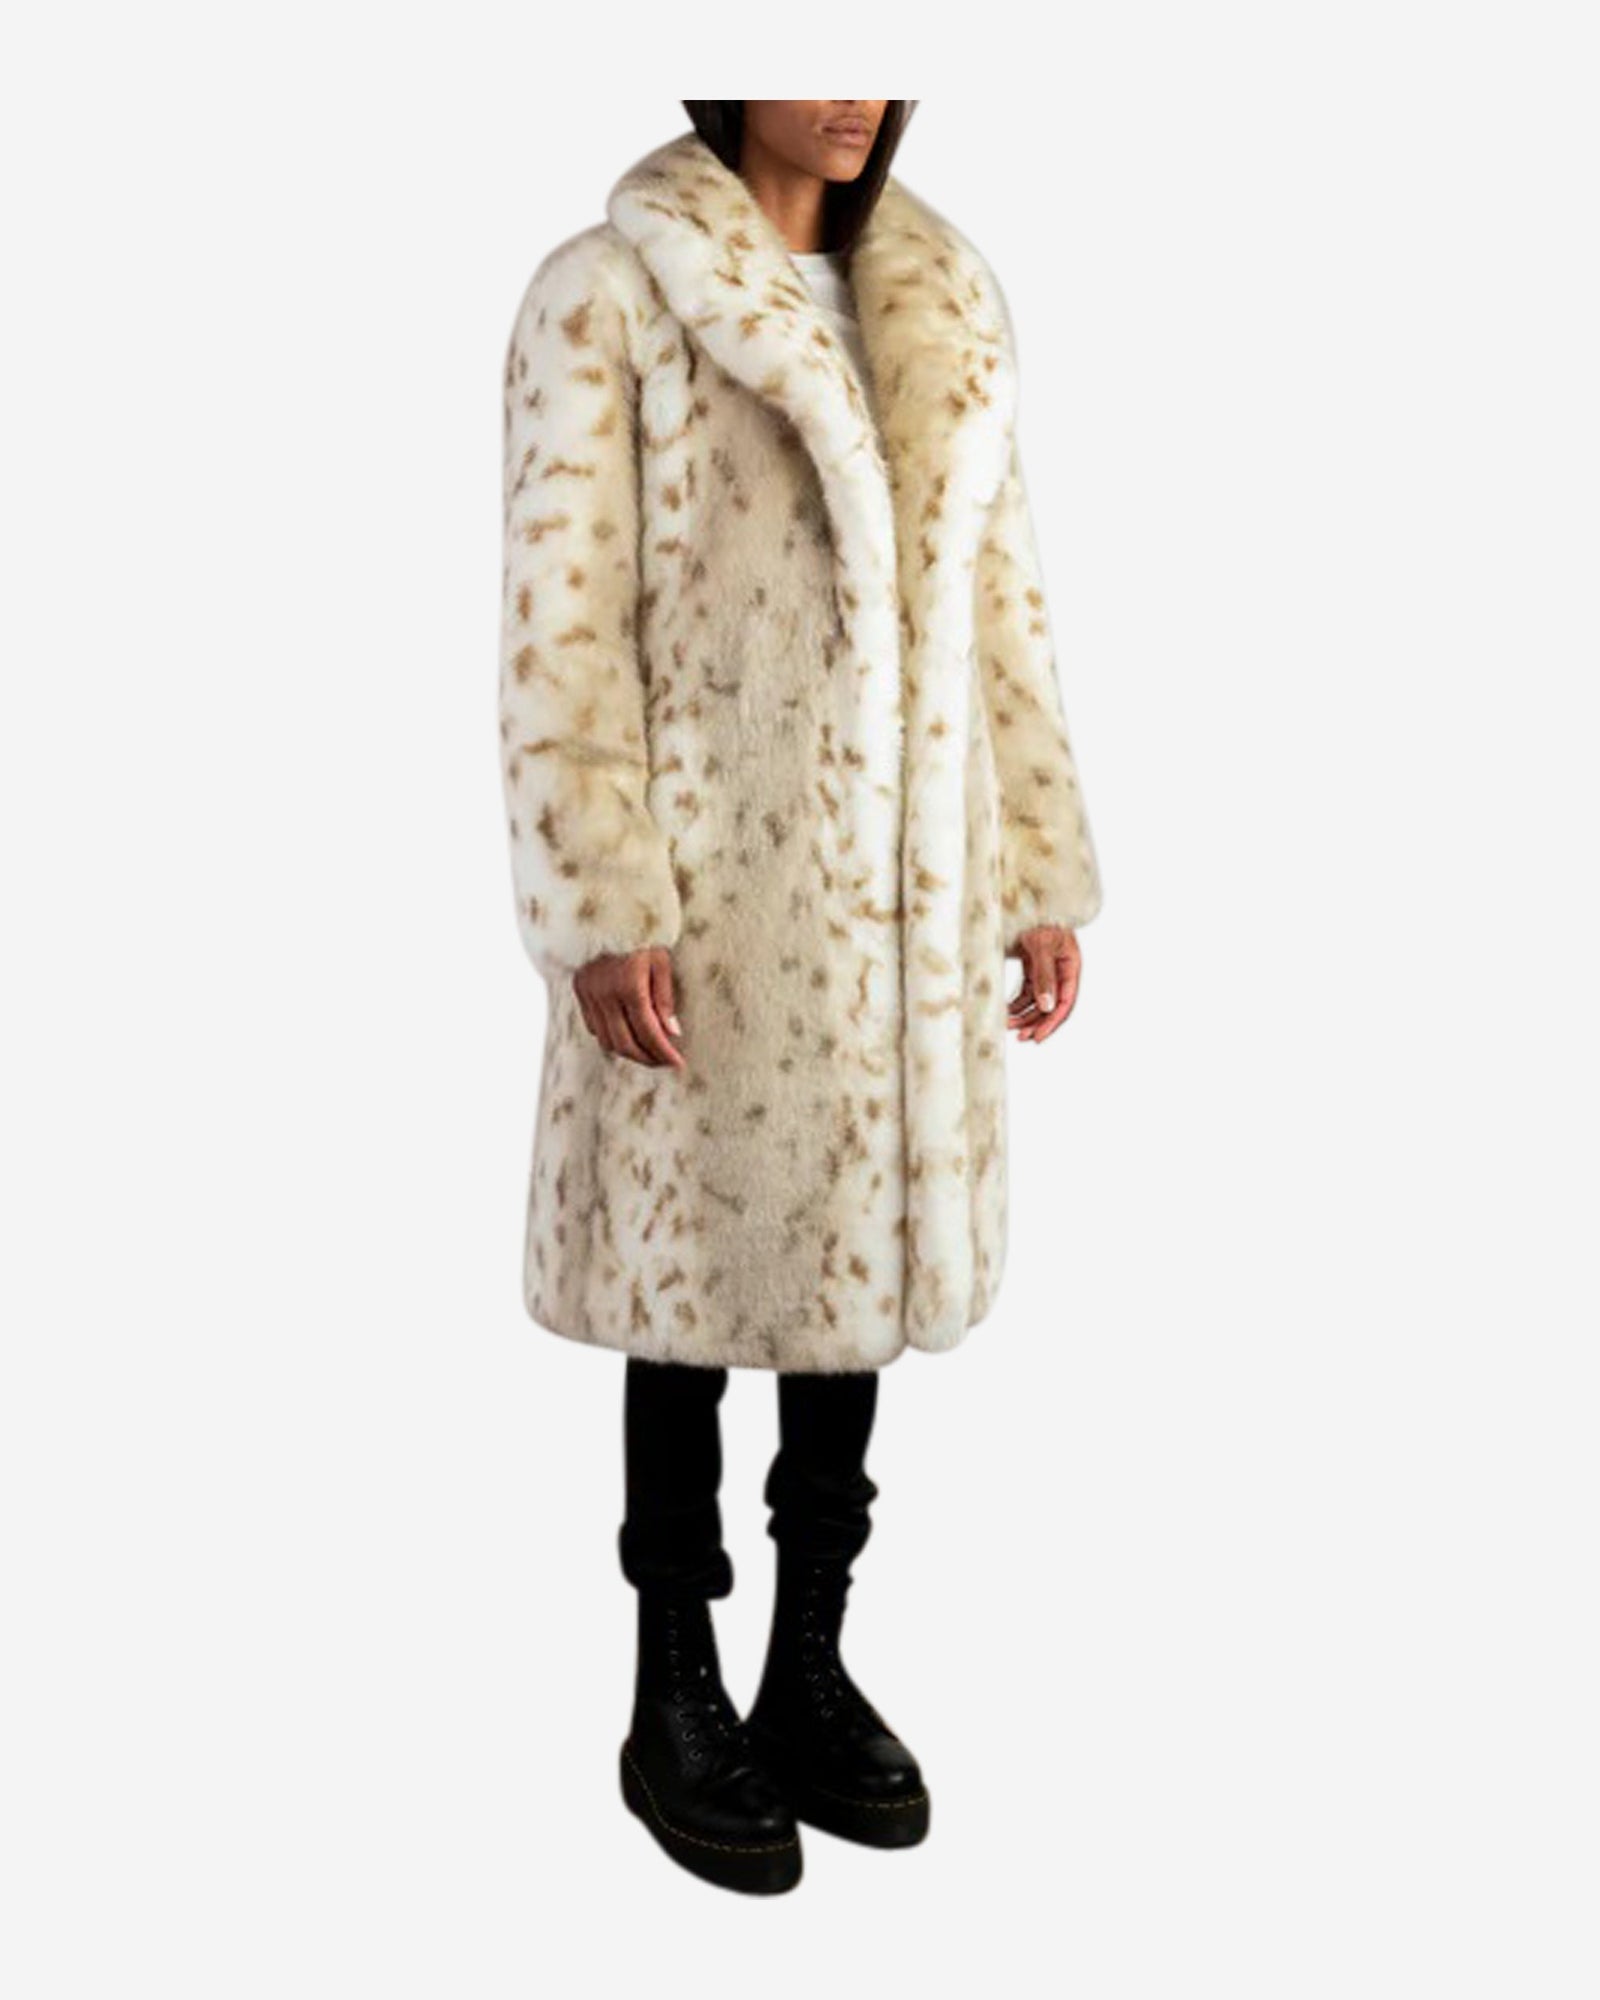 Beth's Faux Fur Lynx Coat By Faz